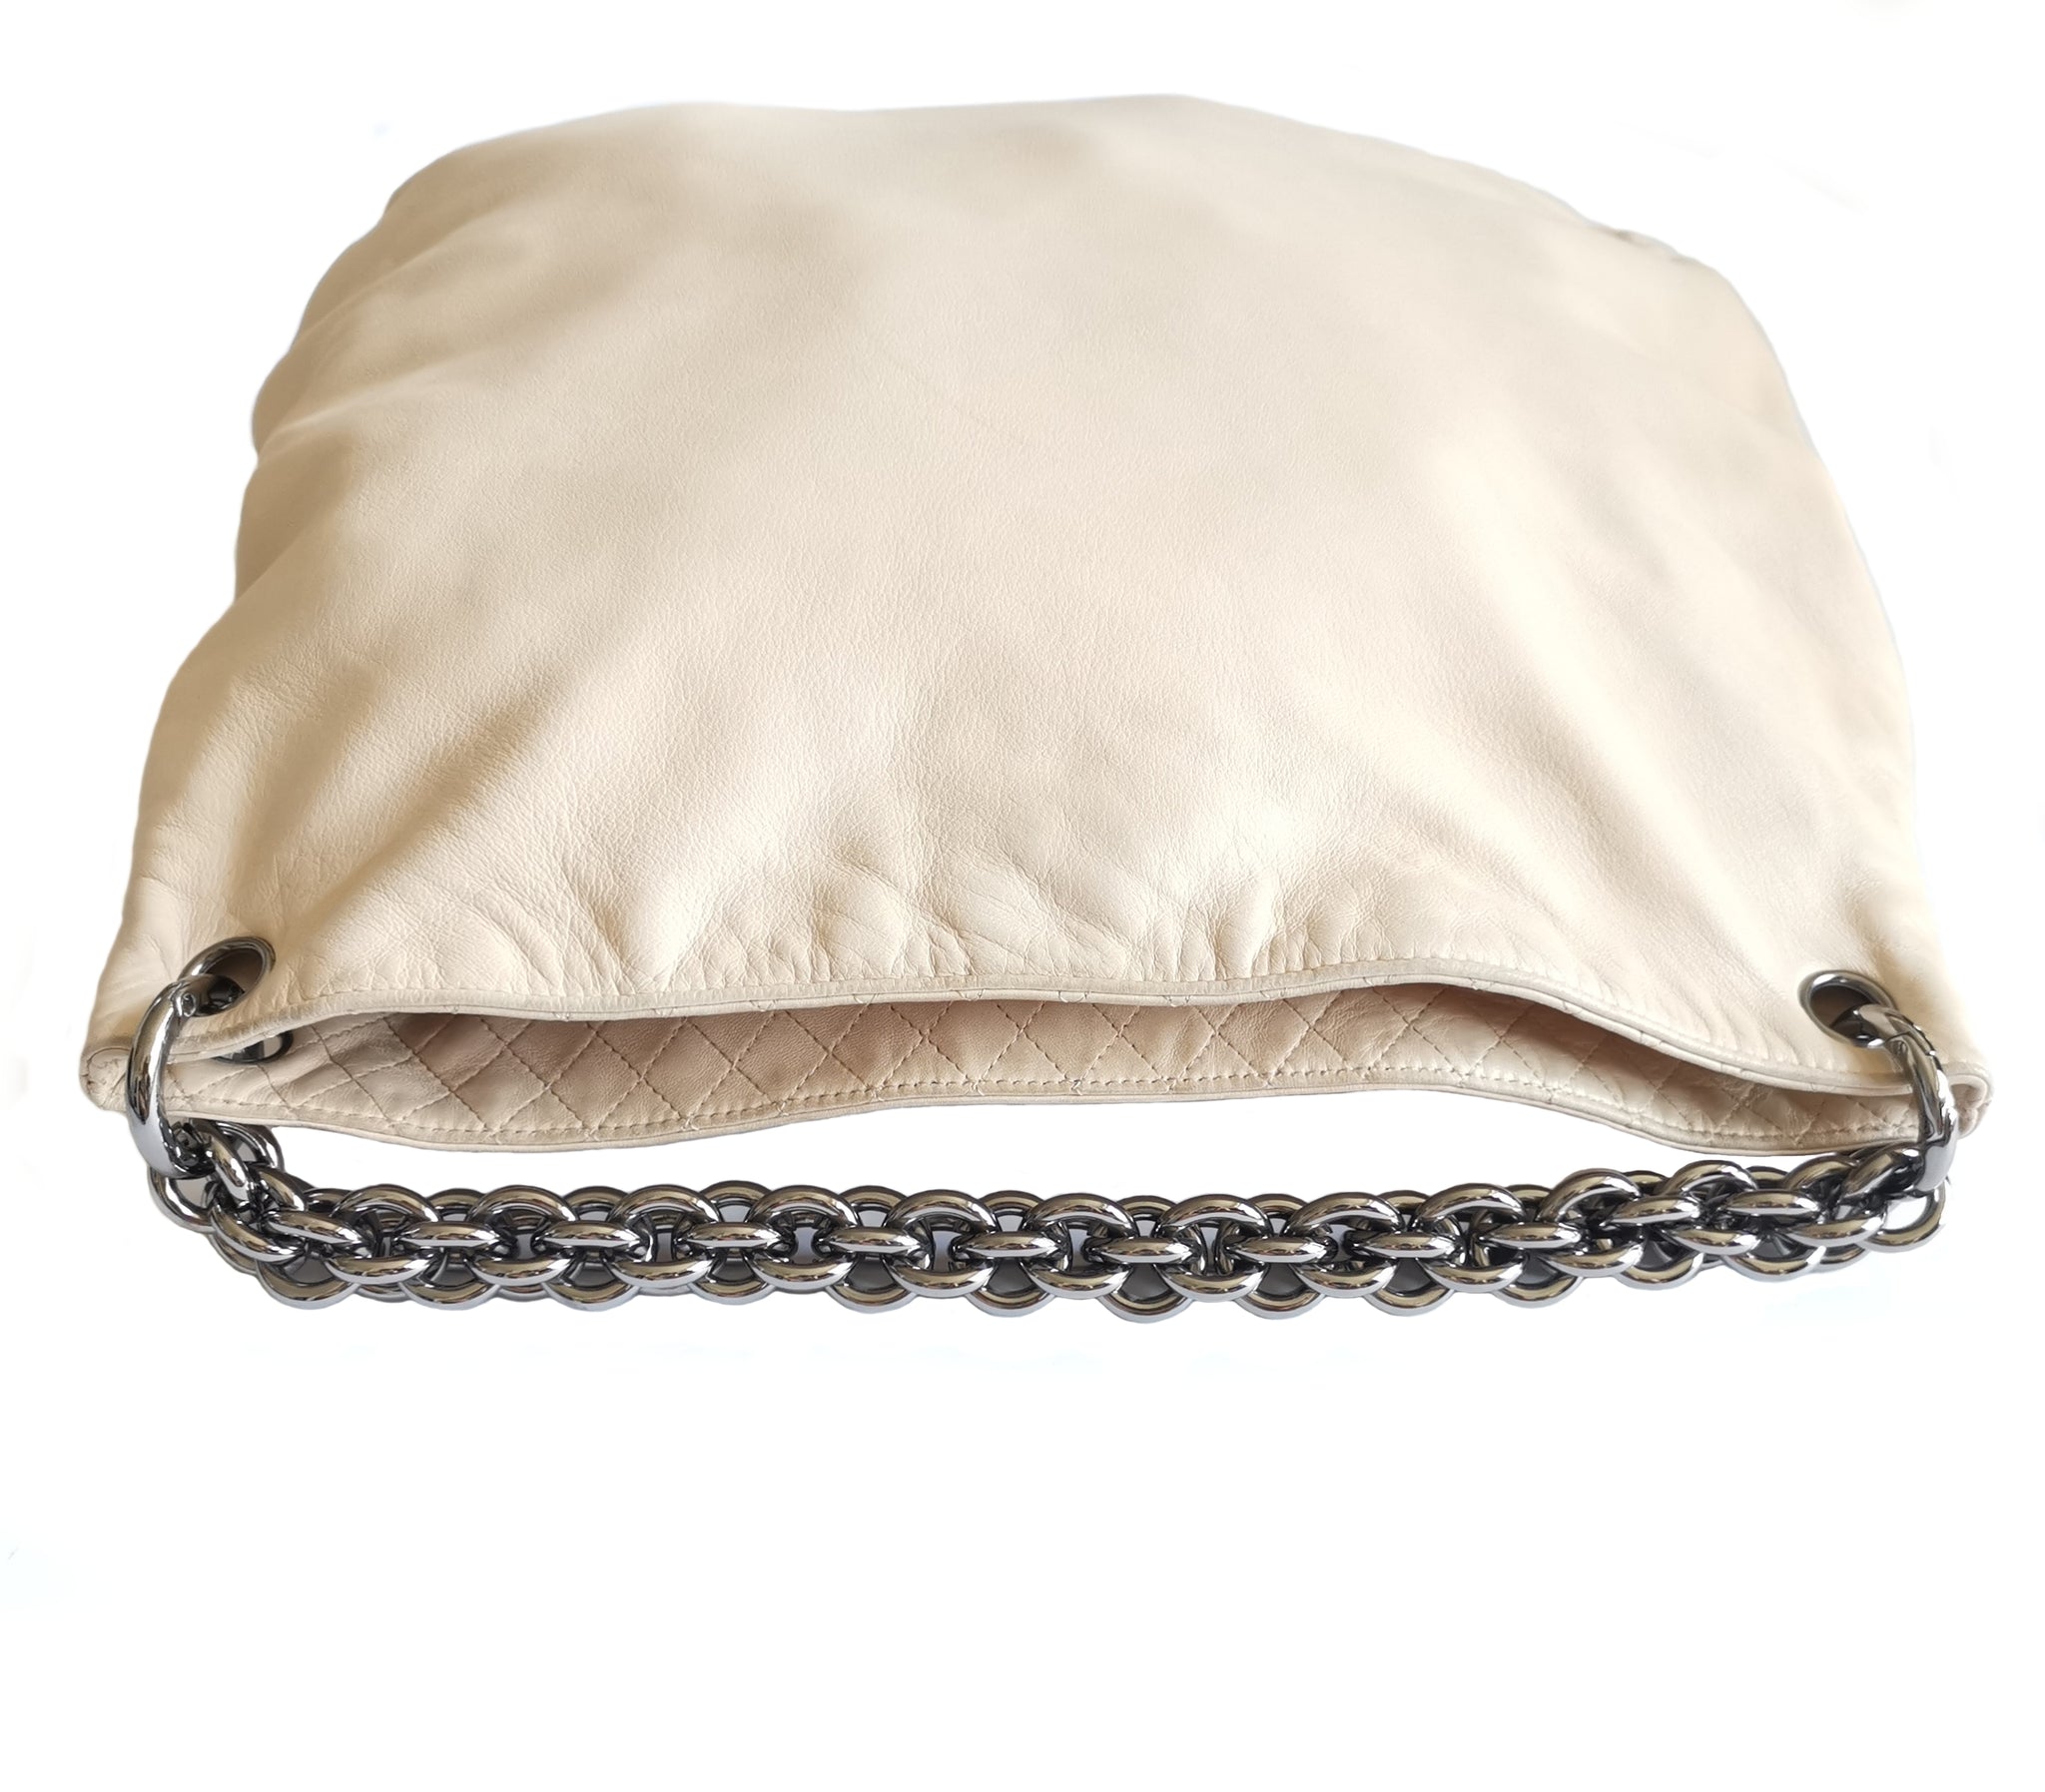 Chanel Crumpled Lambskin Mini Hobo Bag Beige 